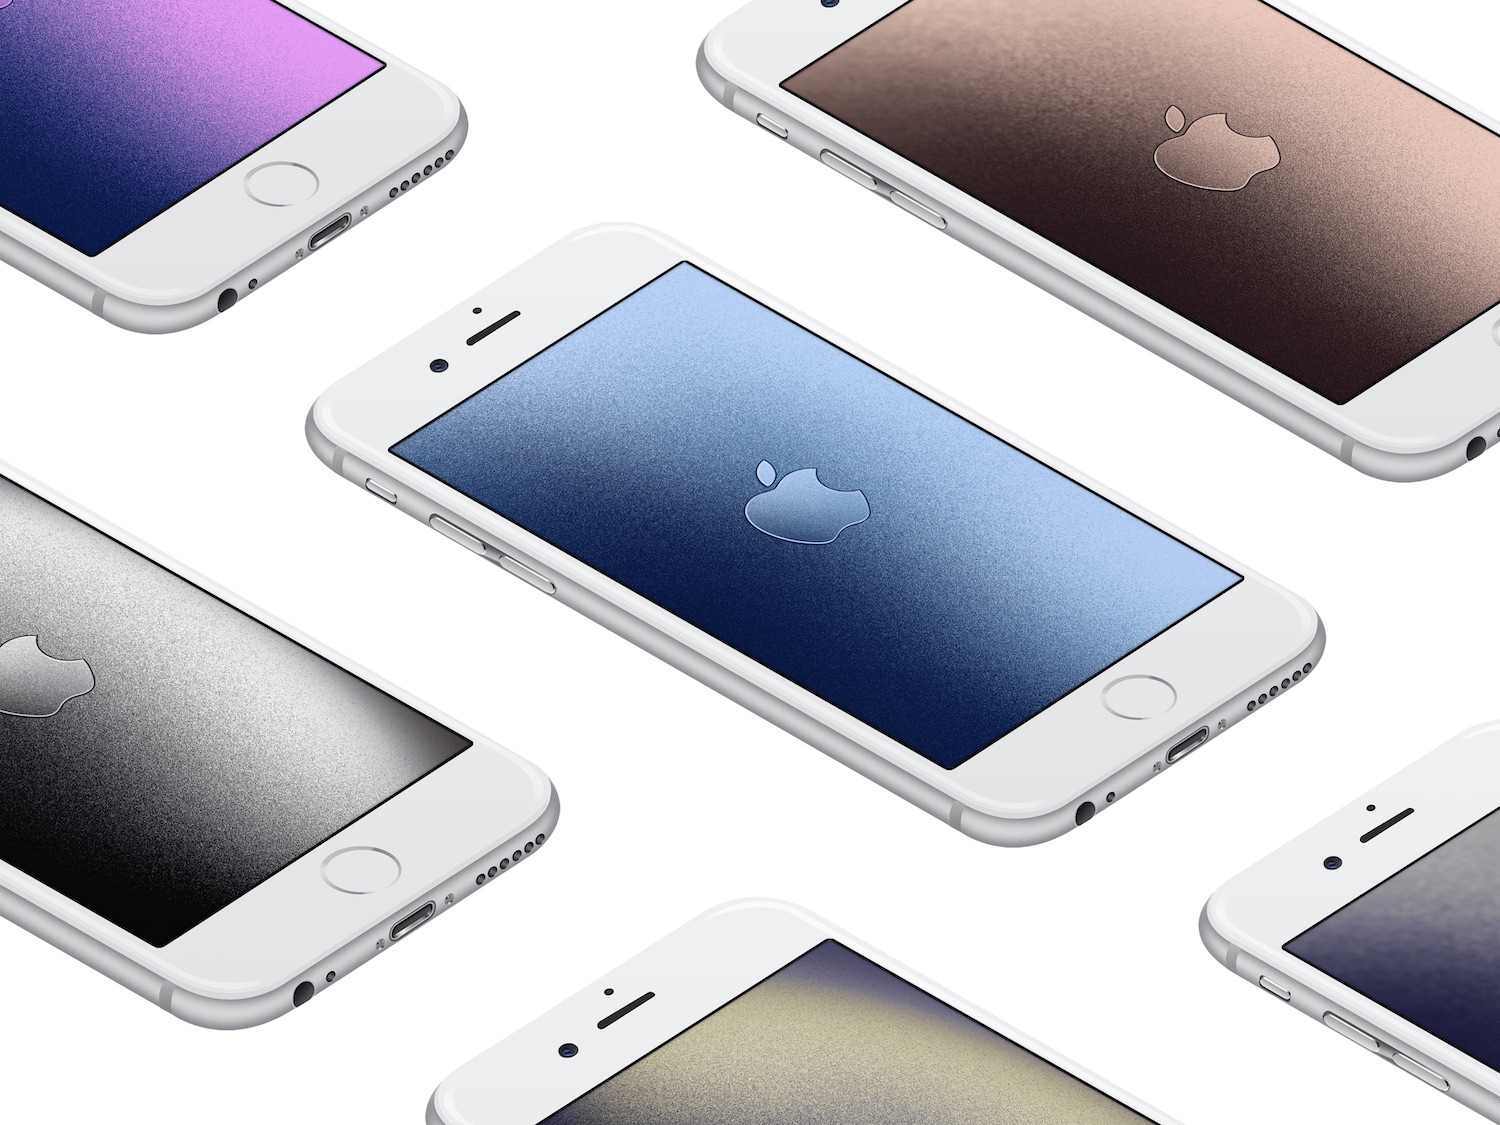 iPhone SE 2020 có thể sẽ ra mắt sớm theo các tin đồn mới đây